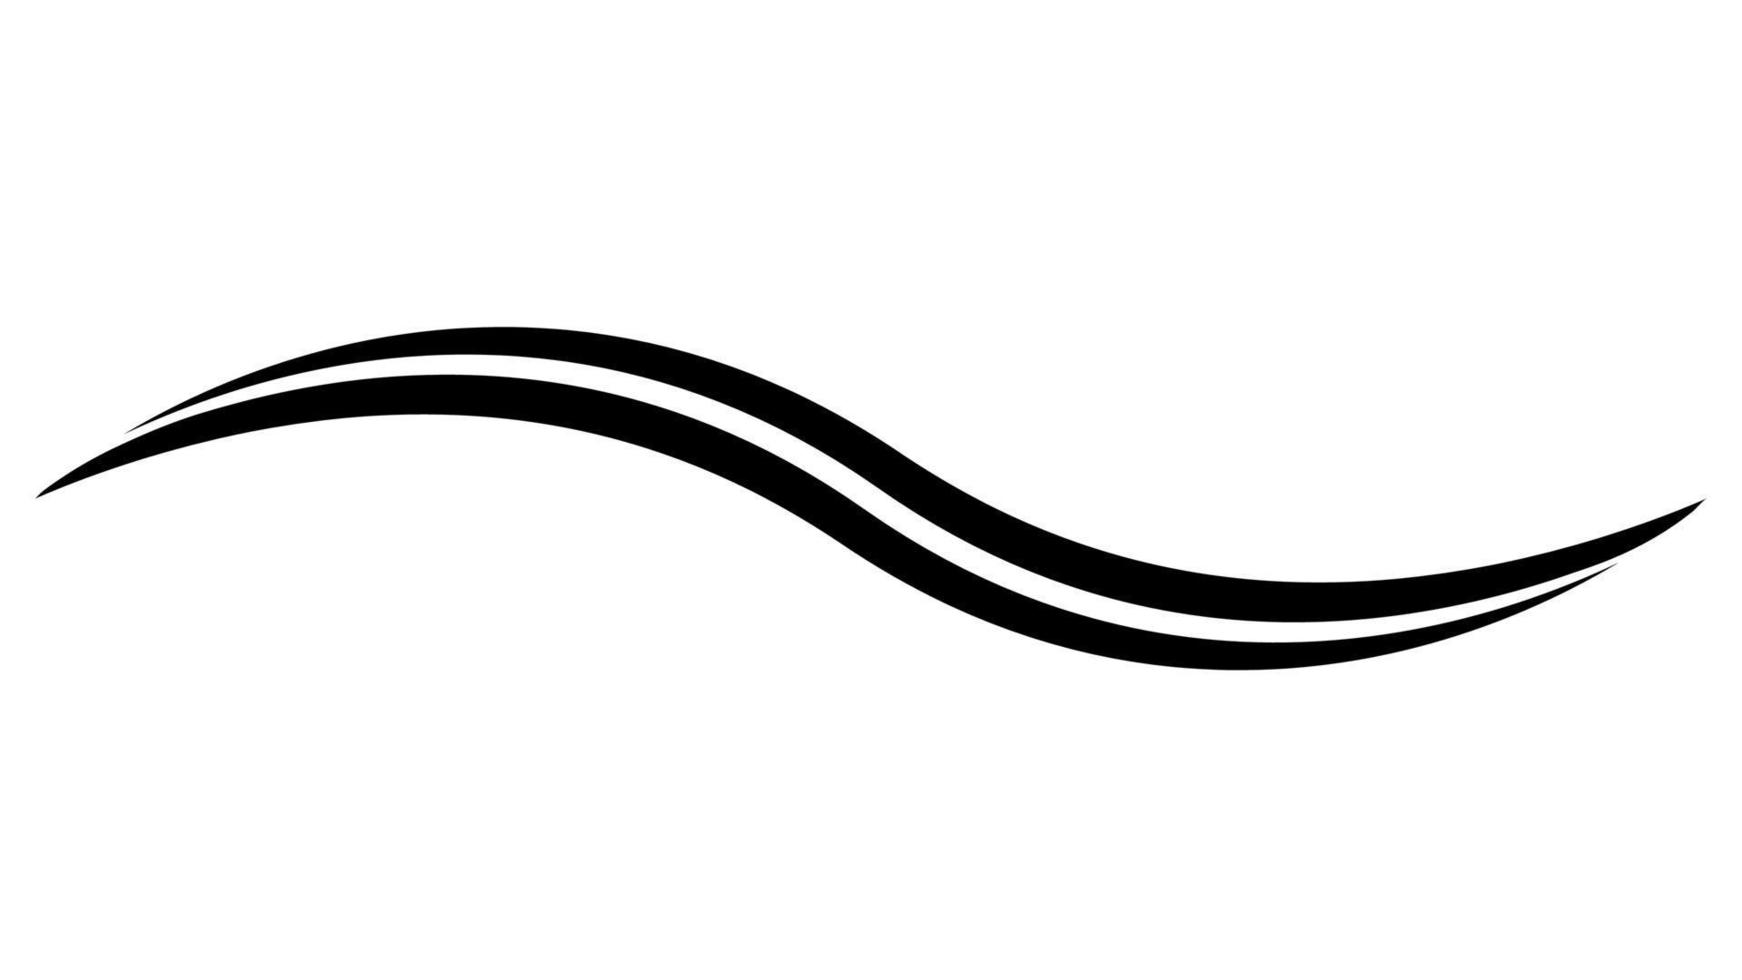 doble curva ola, vector sencillo agua, silbido ondulado tira largo